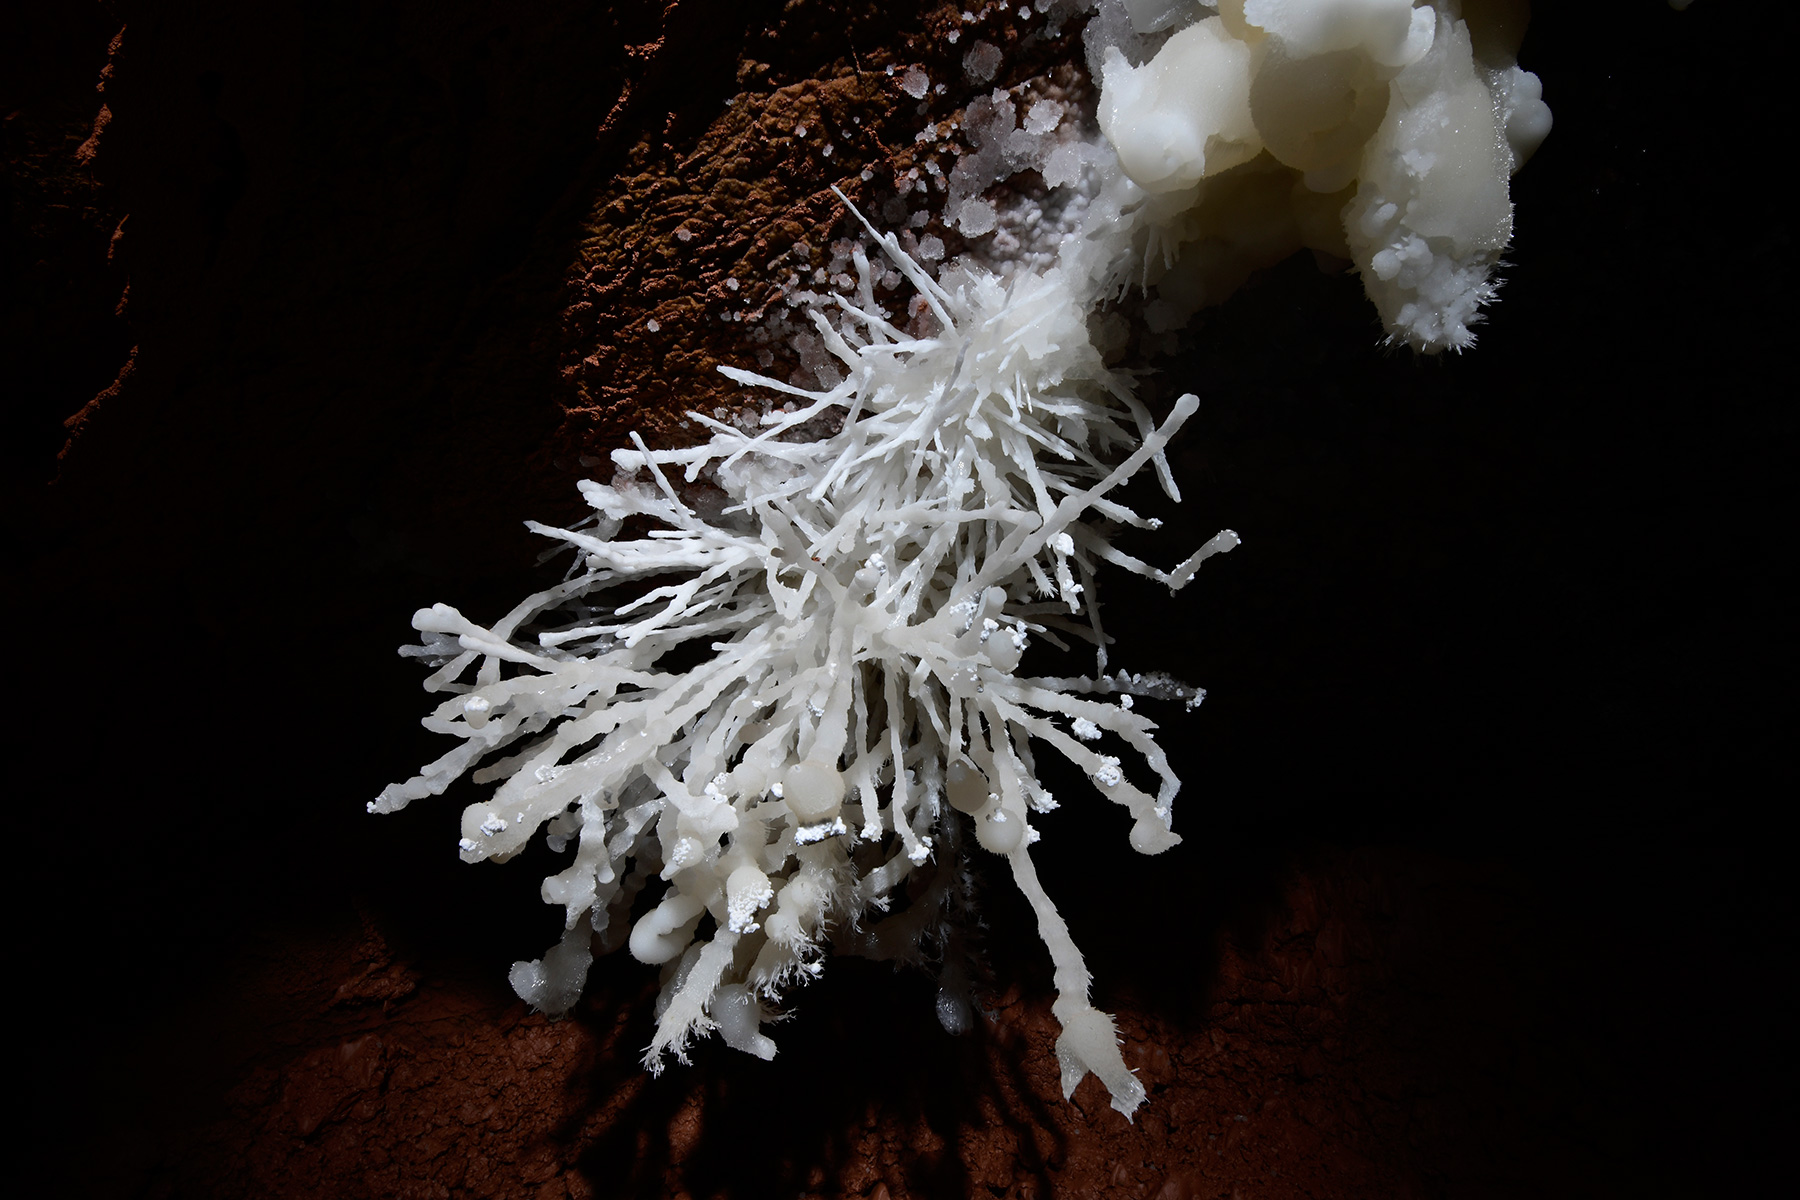 Cave of the Winds (USA - Colorado) - Détail d'un bouquet d'aragonite coralloïde avec fines aiguilles